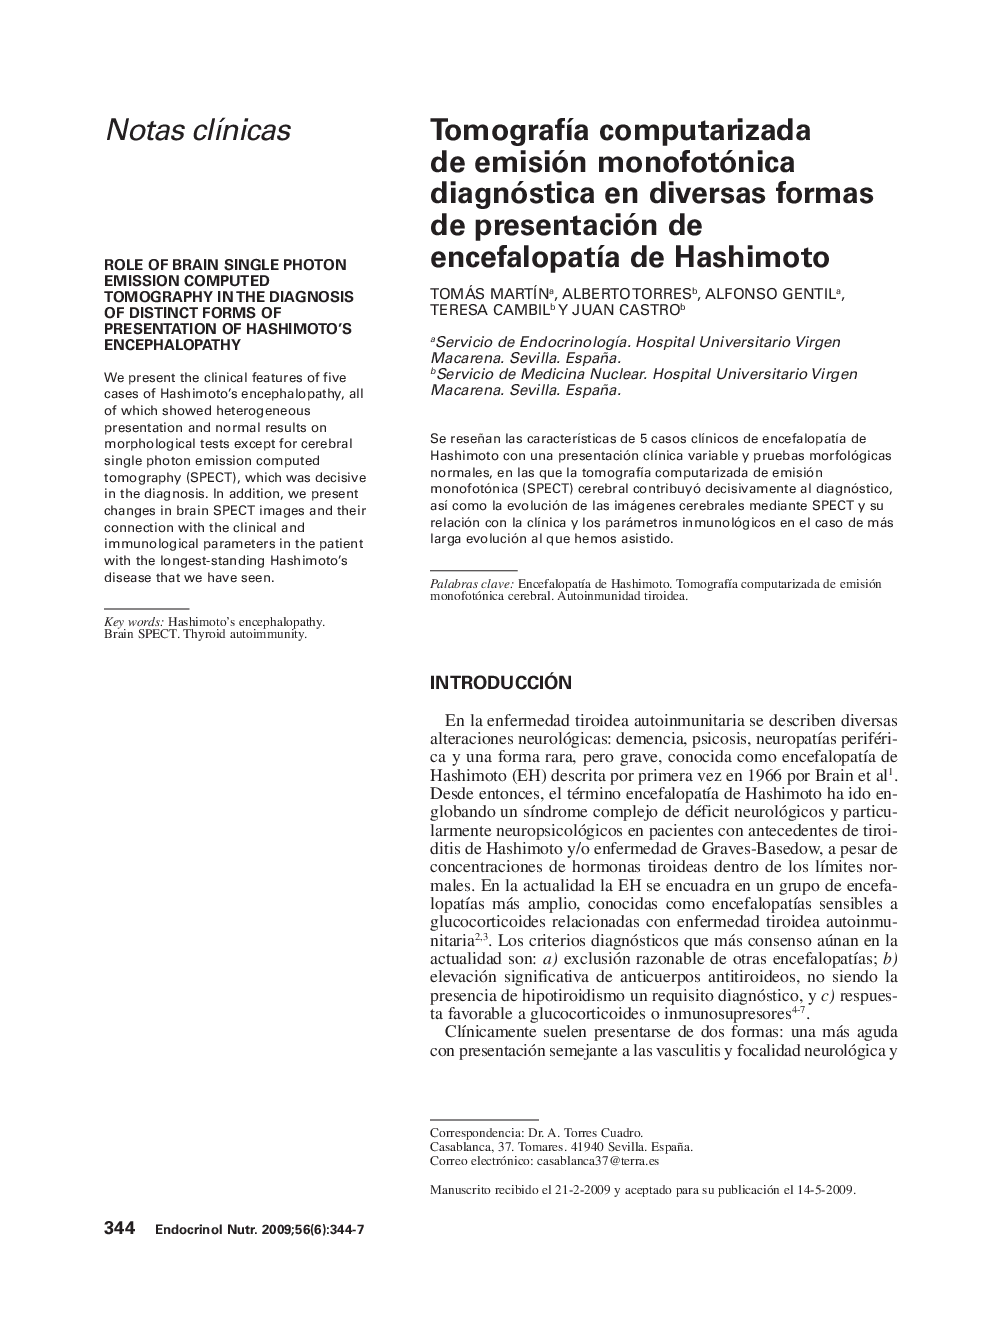 TomografÃ­a computarizada de emisión monofotónica diagnóstica en diversas formas de presentación de encefalopatÃ­a de Hashimoto